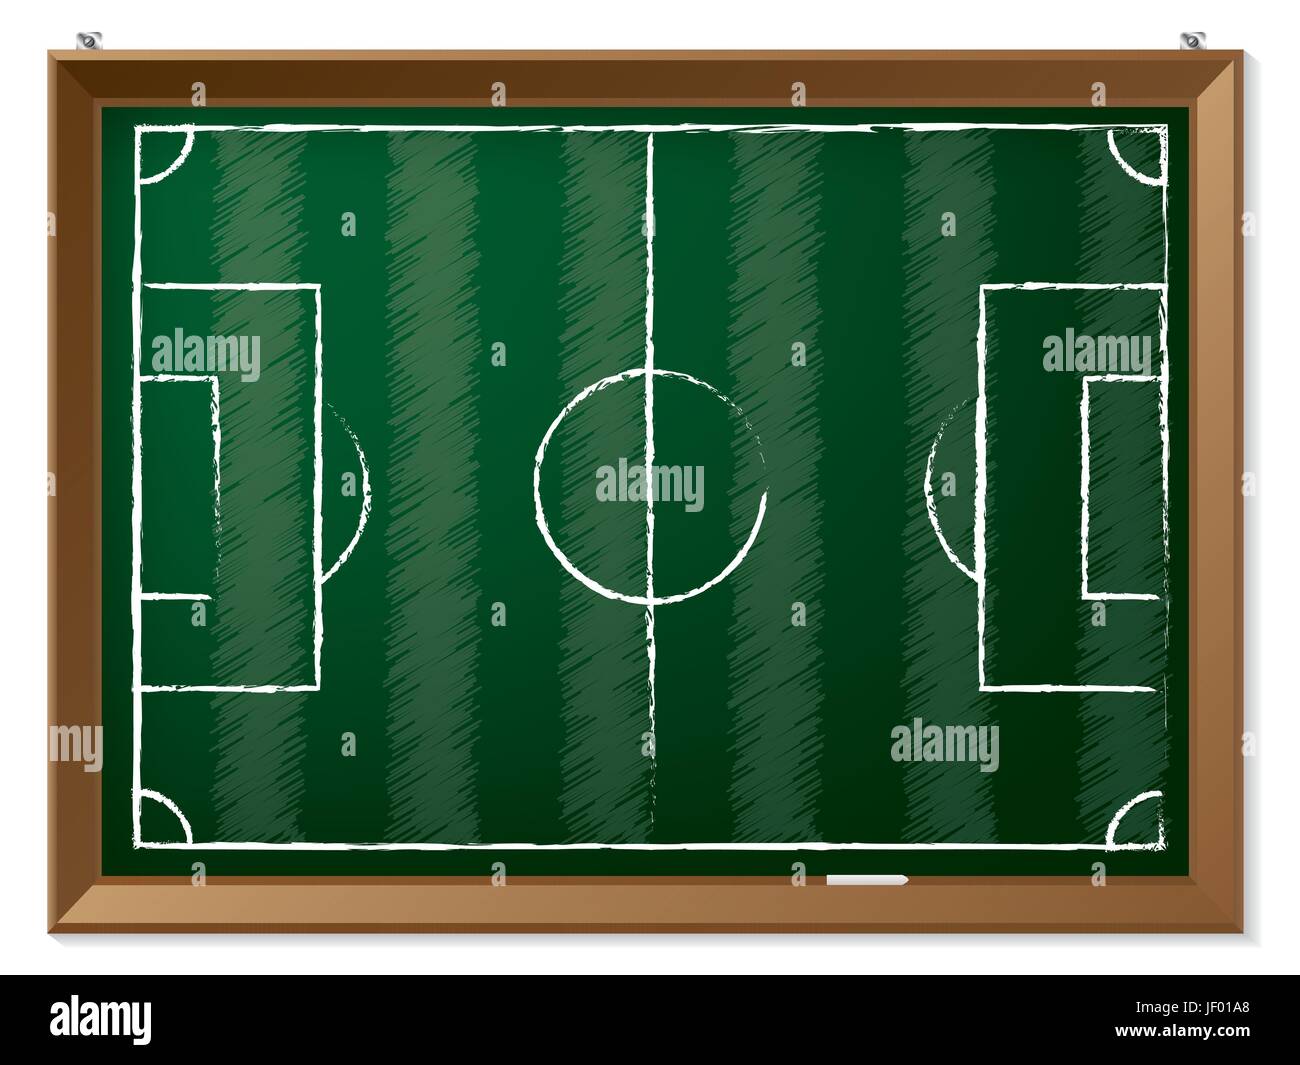 field, blackboard, chalk, board, sport, sports, soccer, football, board, sport, Stock Vector